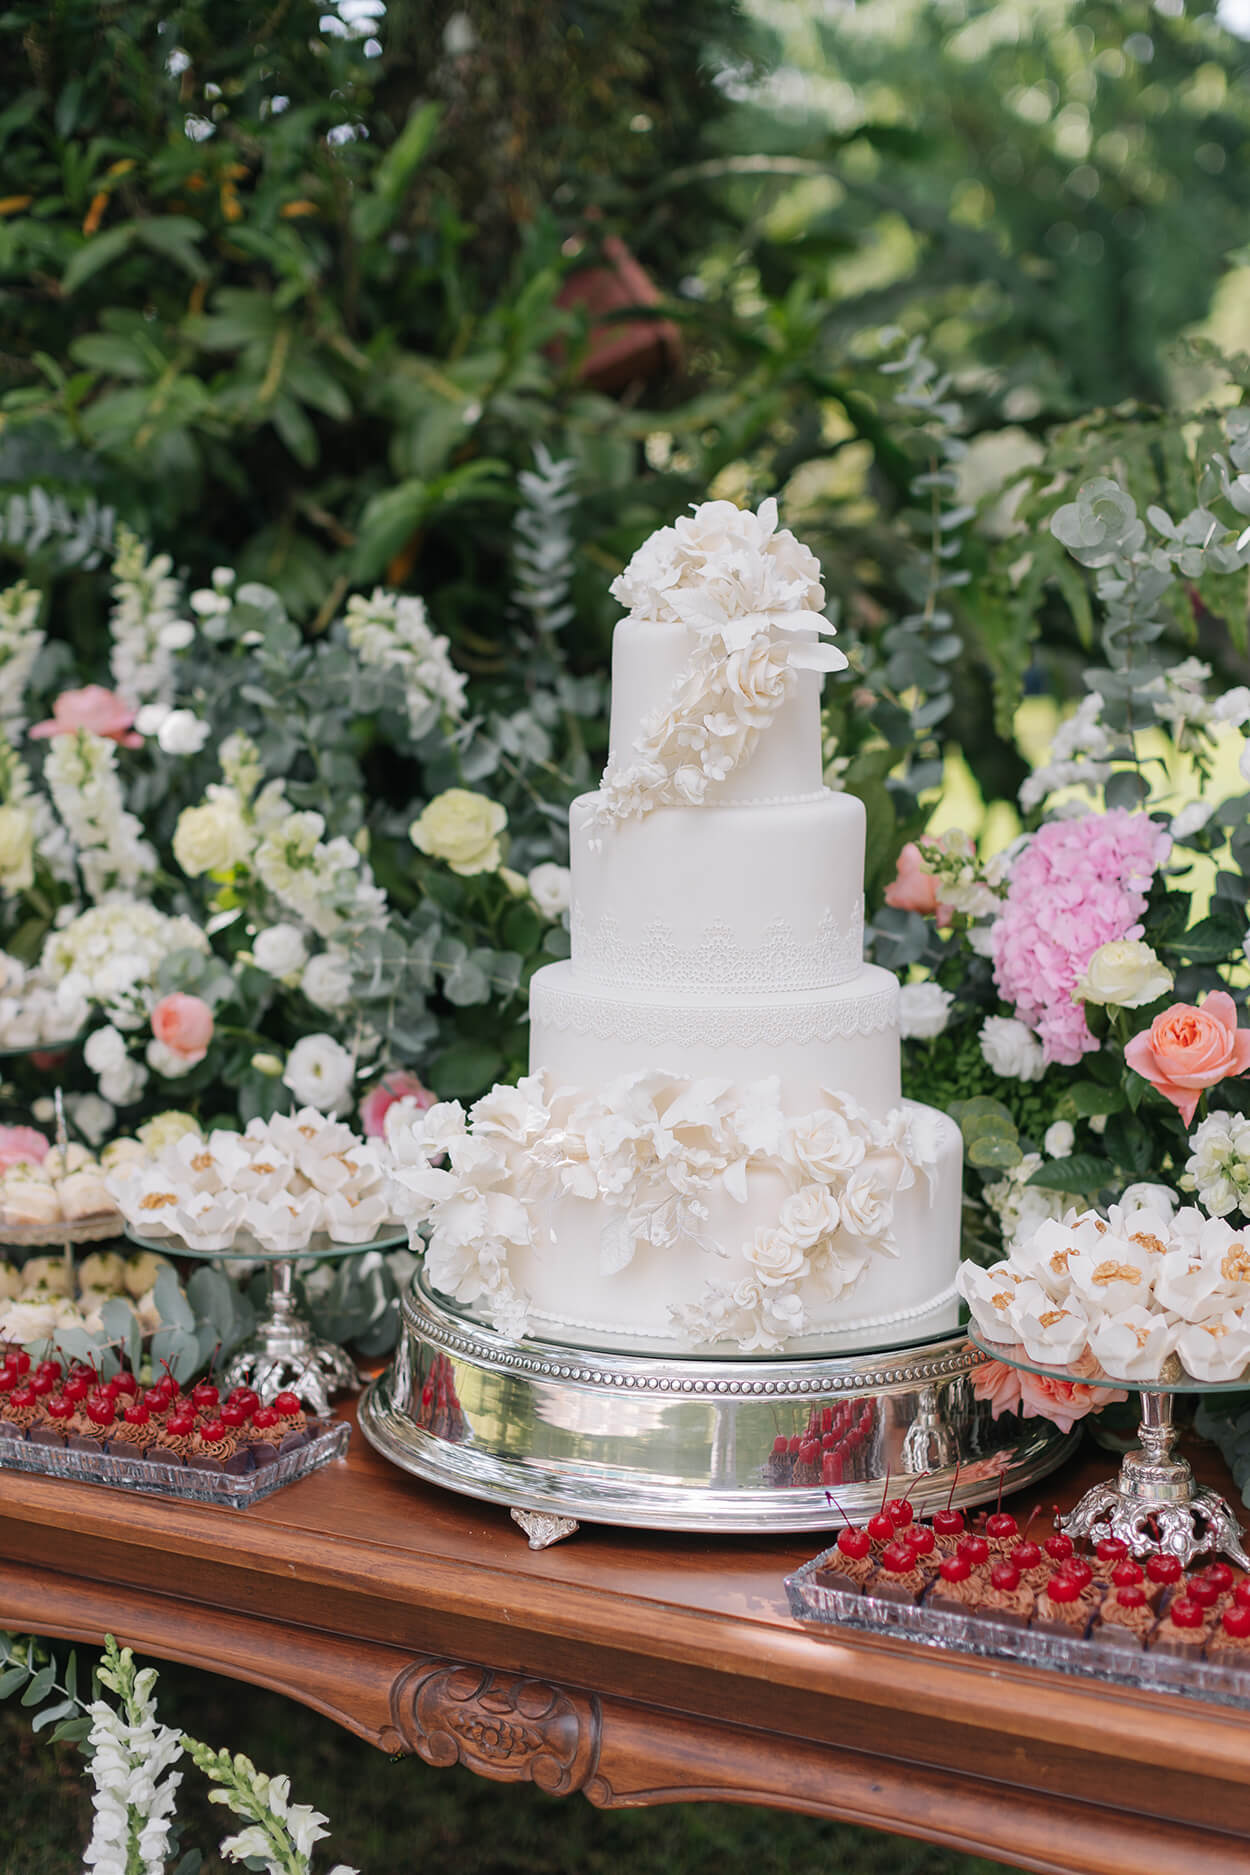 bolo de casamento branco com flores e bandejas com doces e arranjos com flores